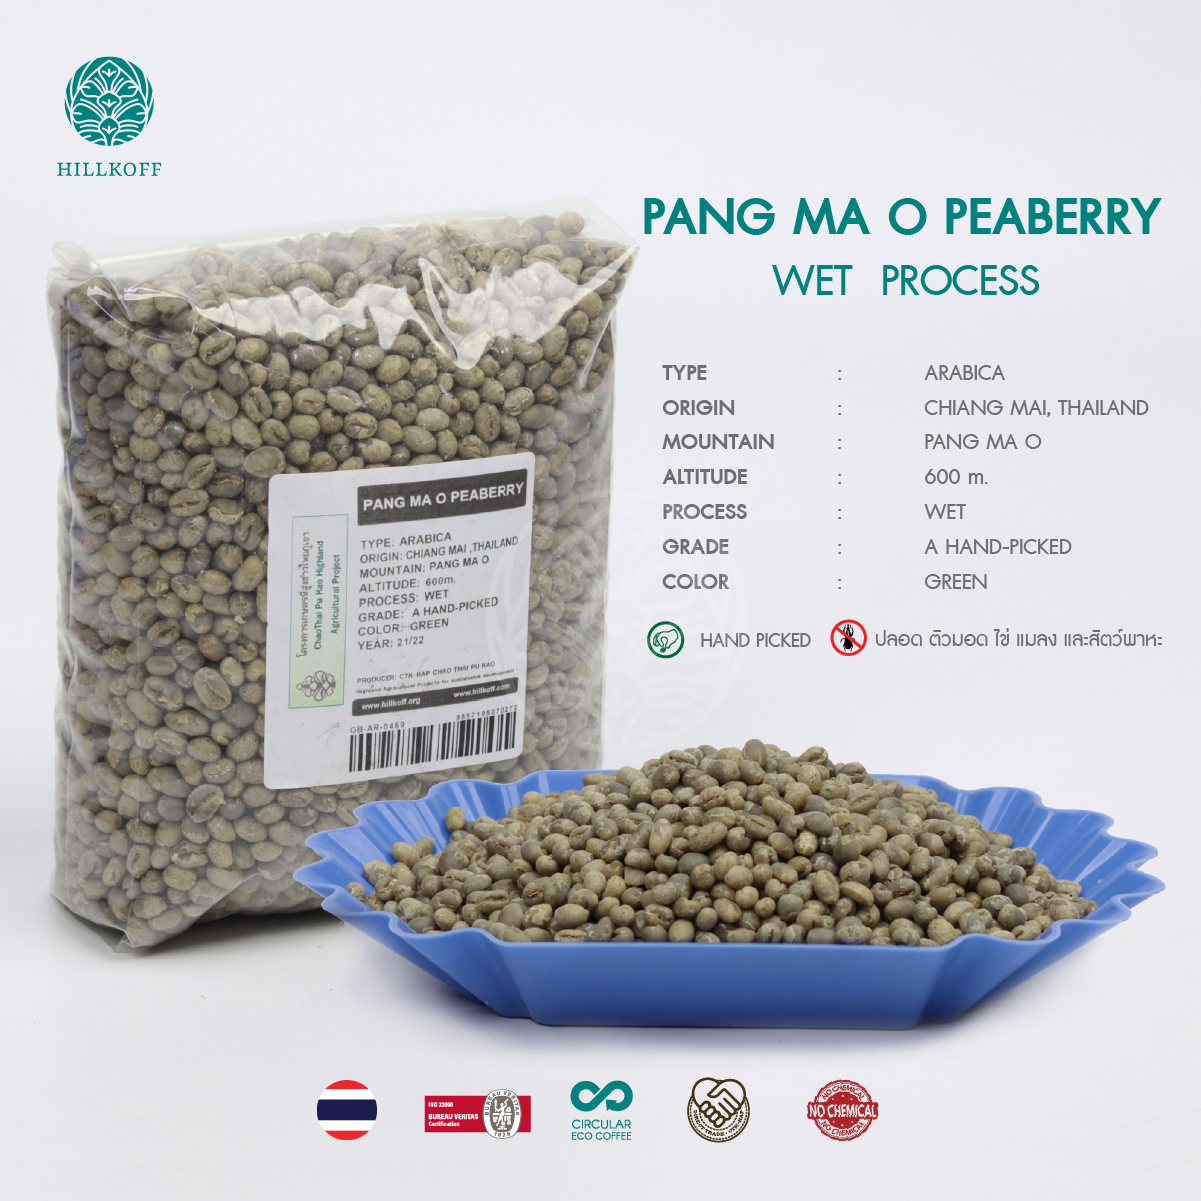 เมล็ดกาแฟสาร PANG MA O PEABERRY พร้อมคั่วทันที (ปางมะโอ พีเบอร์รี่ ) Arabica Grade A คัดมือพิเศษ : 1 Kg.